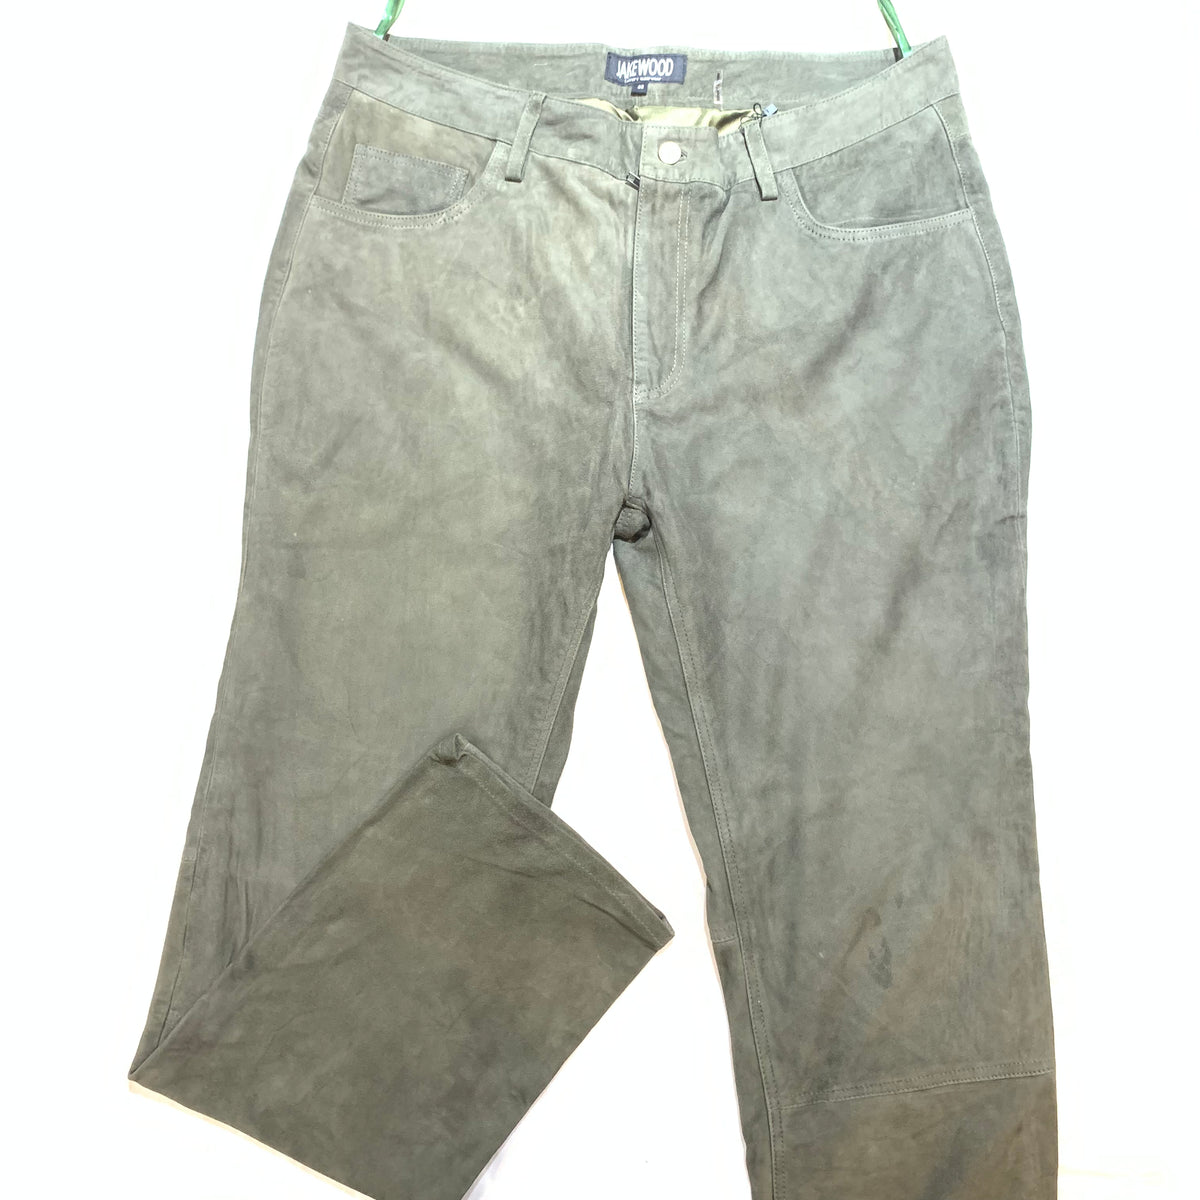 Kashani Men's Olive Green Suede Straight Cut Pants - Dudes Boutique